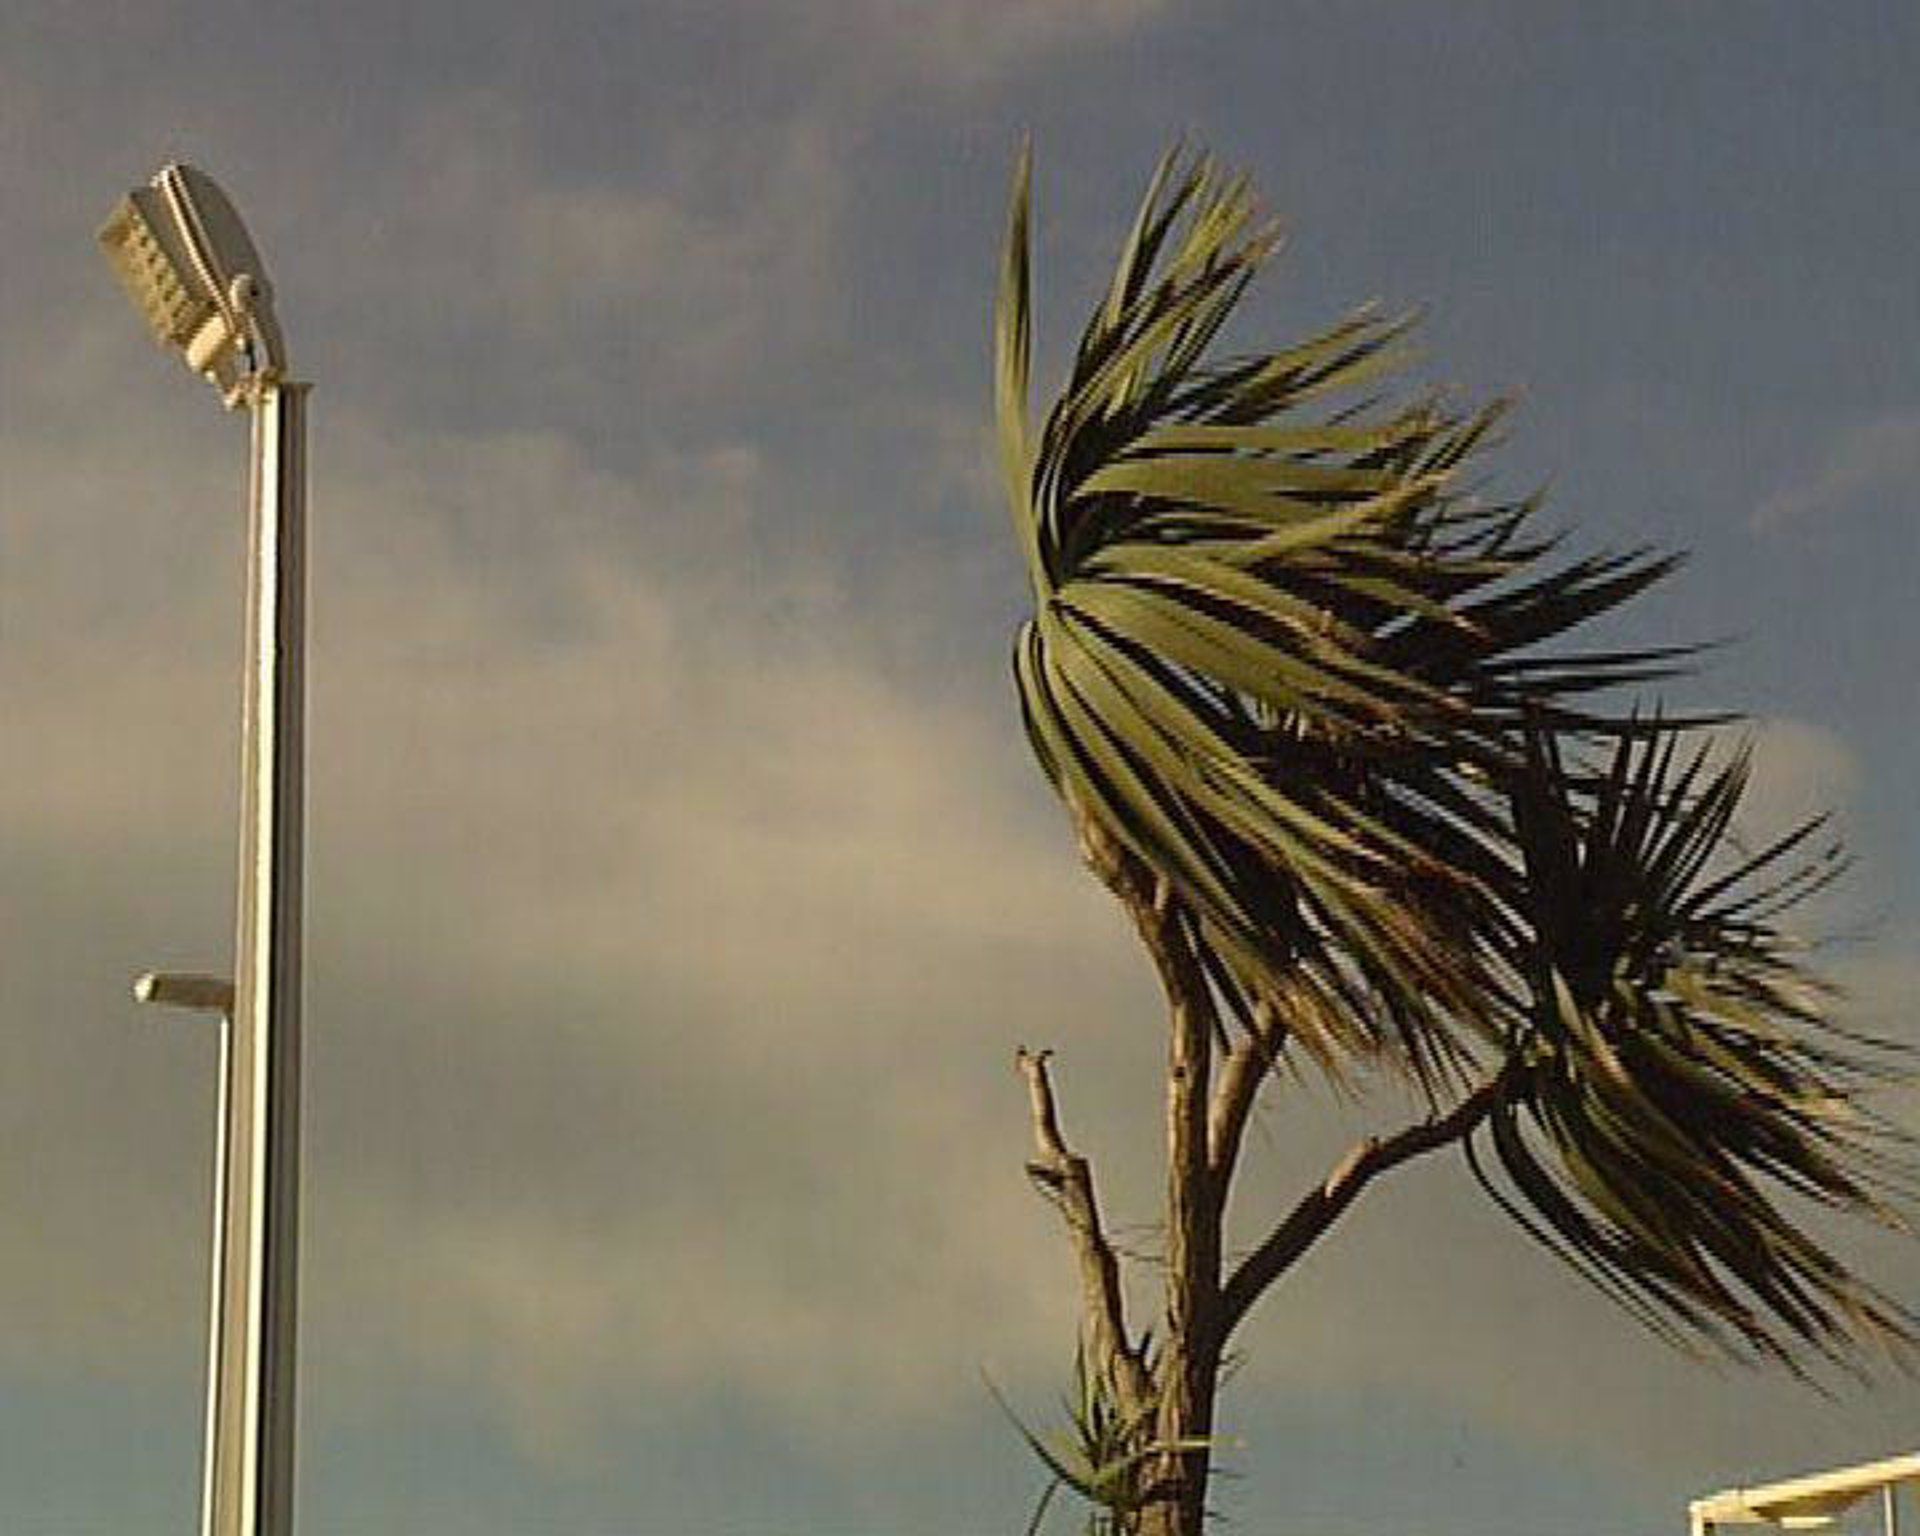 El Gobierno de Canarias declara la alerta por vientos de hasta 90 km/h en La Palma, Tenerife, La Gomera y Gran Canaria